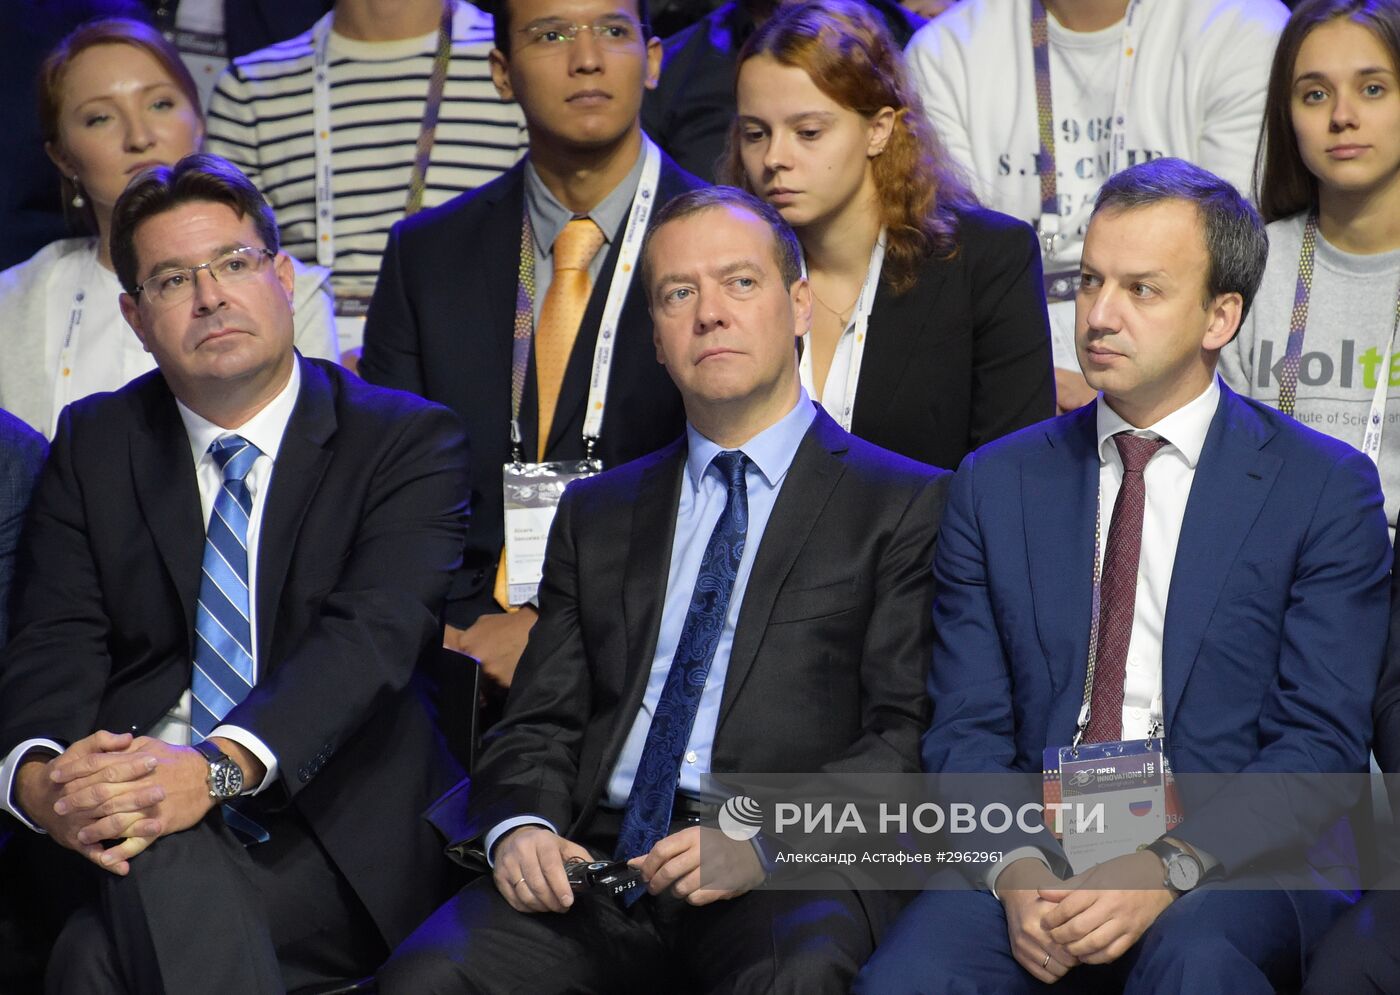 Премьер-министр РФ Д. Медведев принял участие в форуме "Открытые инновации - 2016"